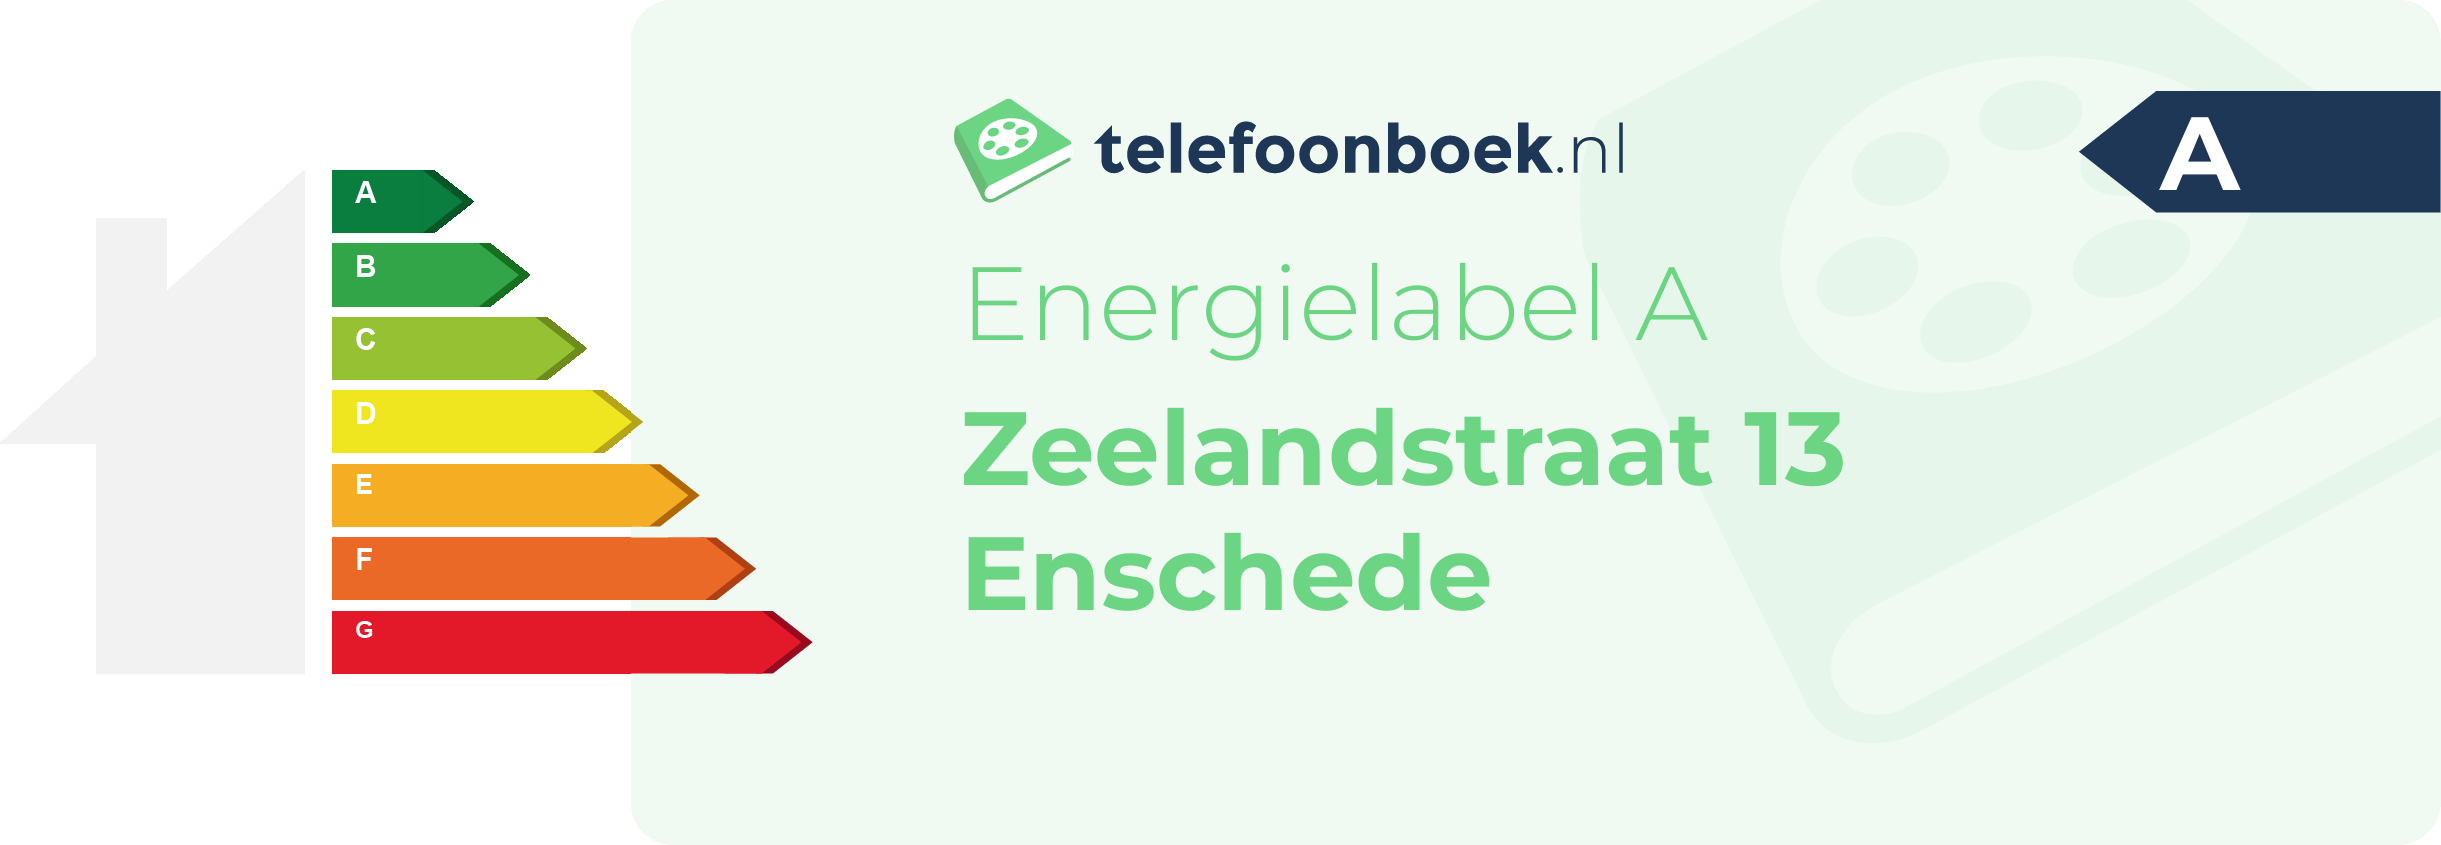 Energielabel Zeelandstraat 13 Enschede